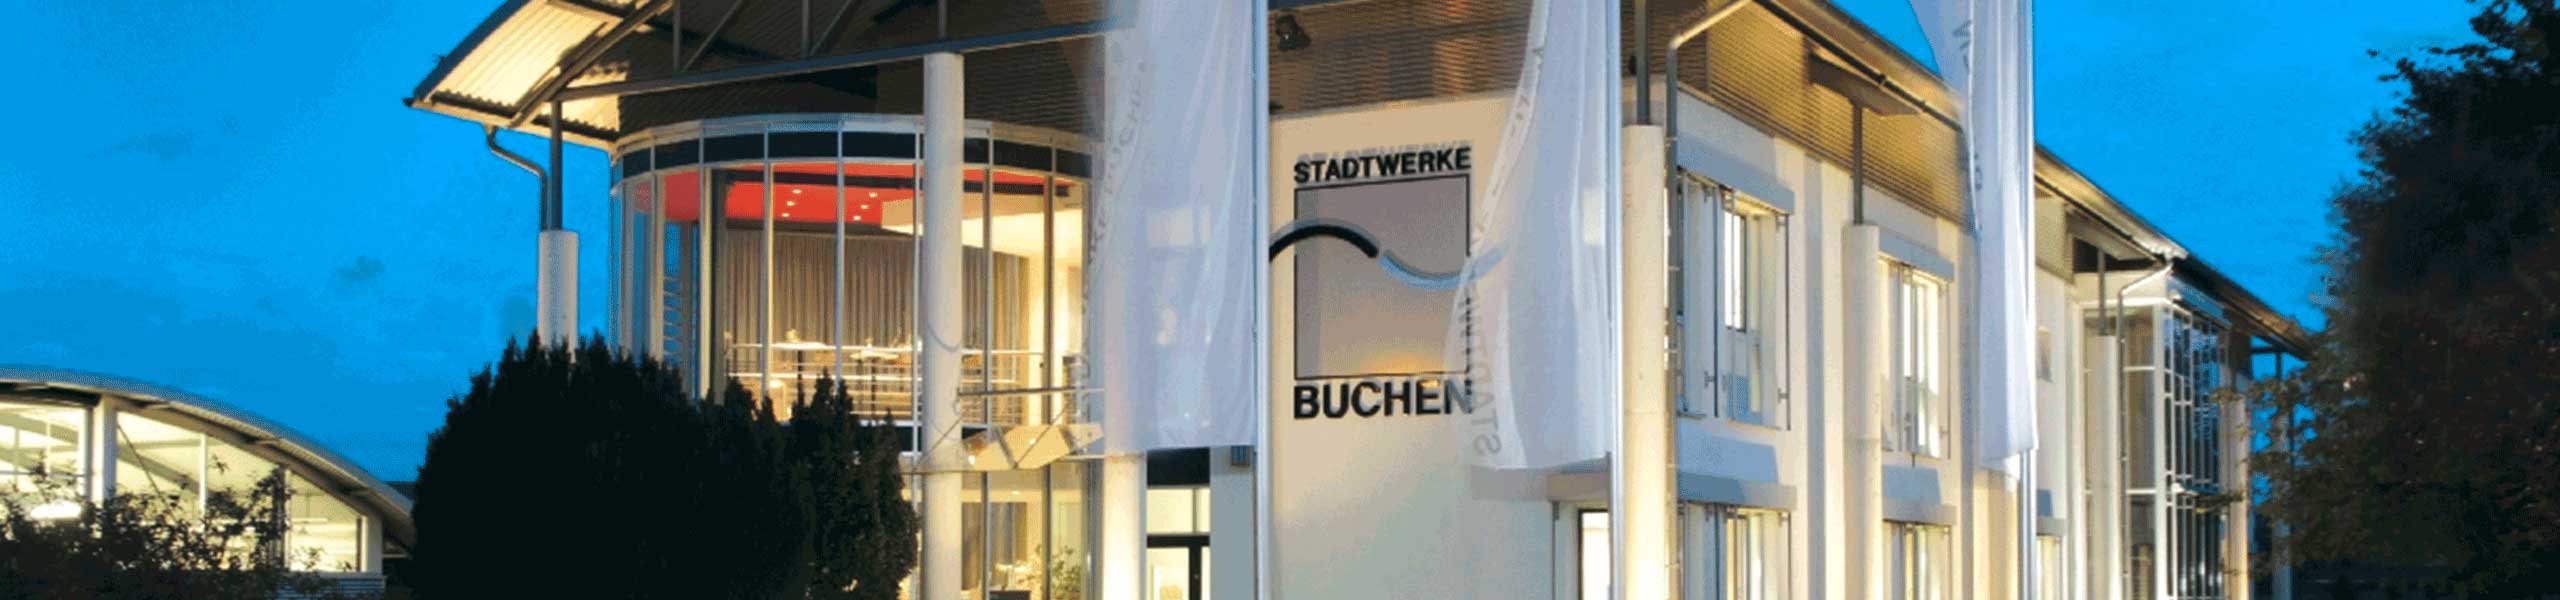 Stadtwerke Buchen GmbH & Co KG - Wohnmobilhafen